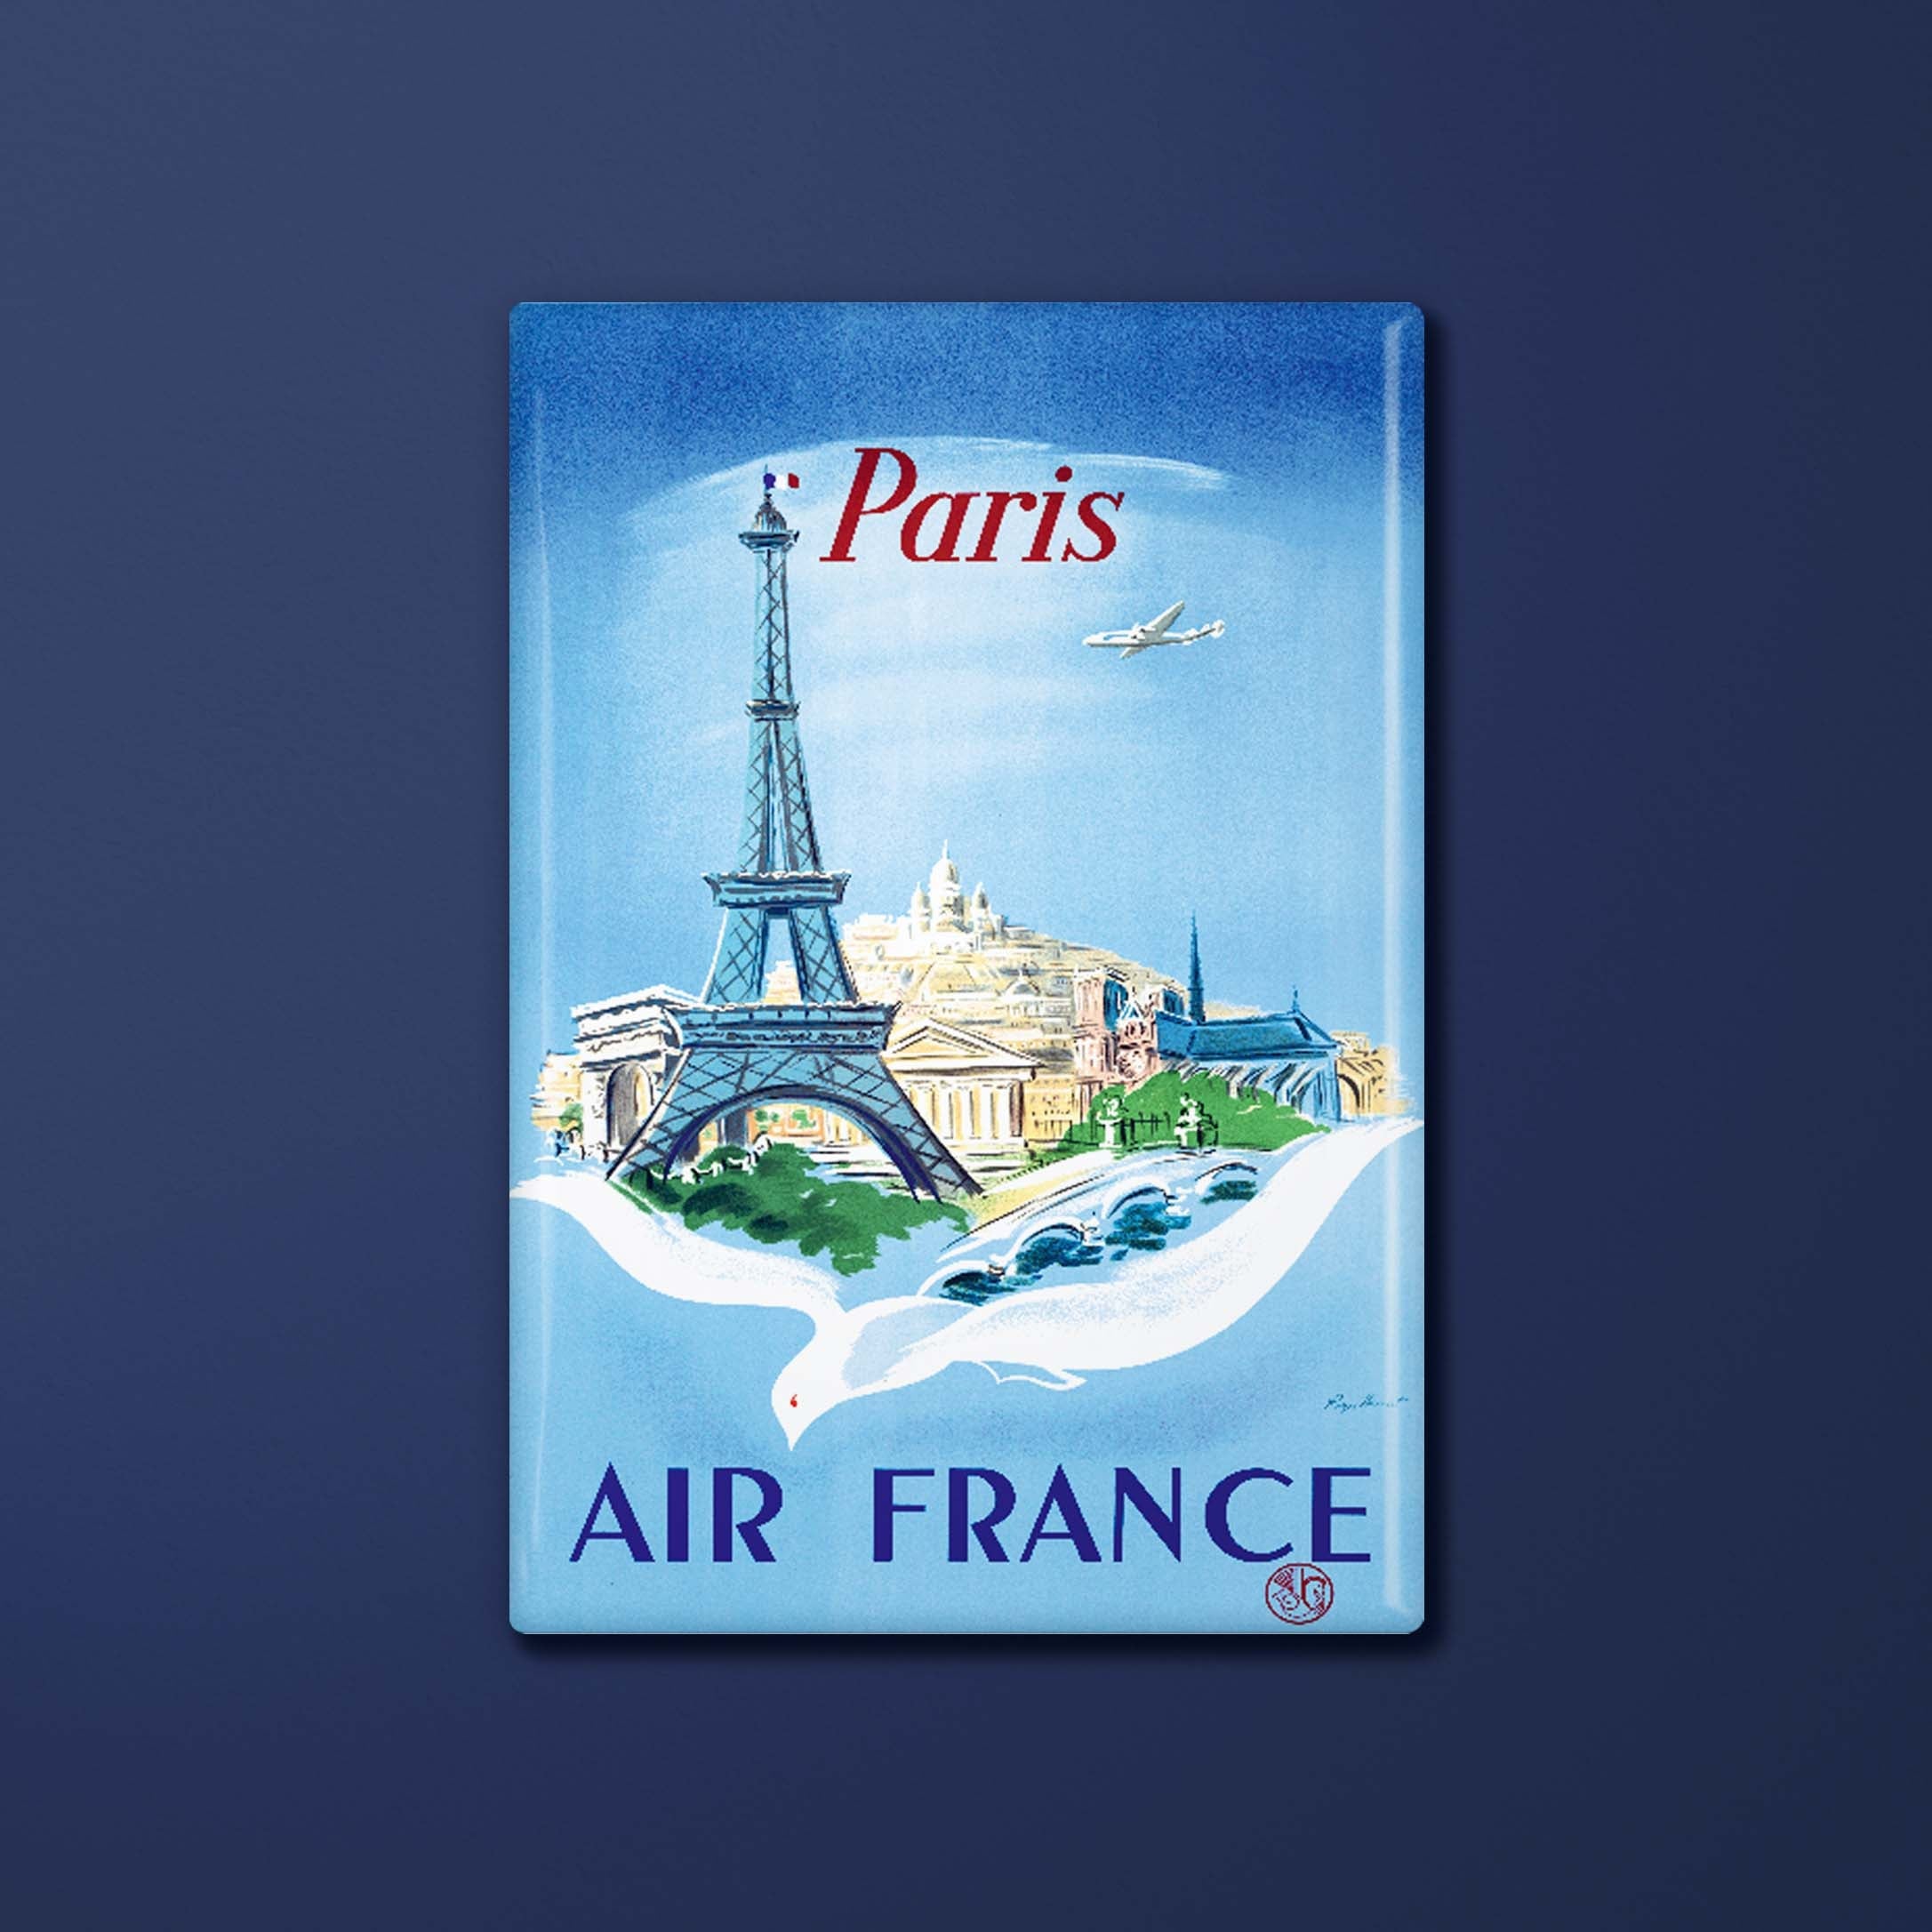 Magnet Air France Legend Paris, Eiffel Tower and dove